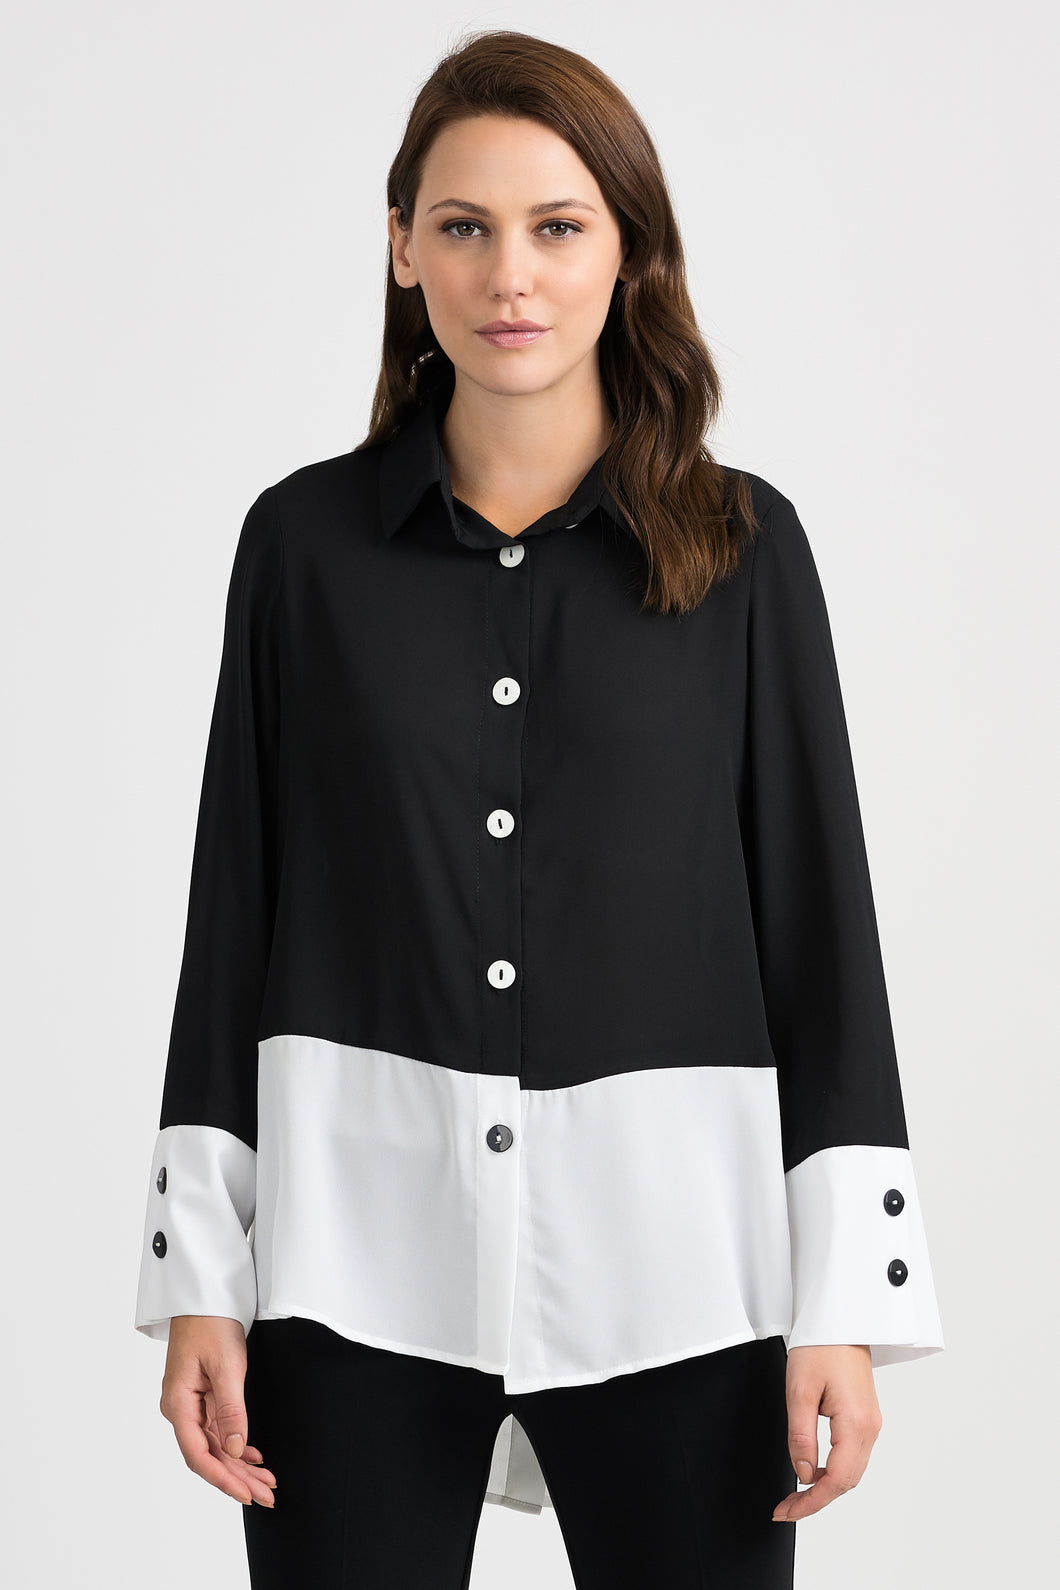 Joseph Ribkoff Black & White Button Up Shirt